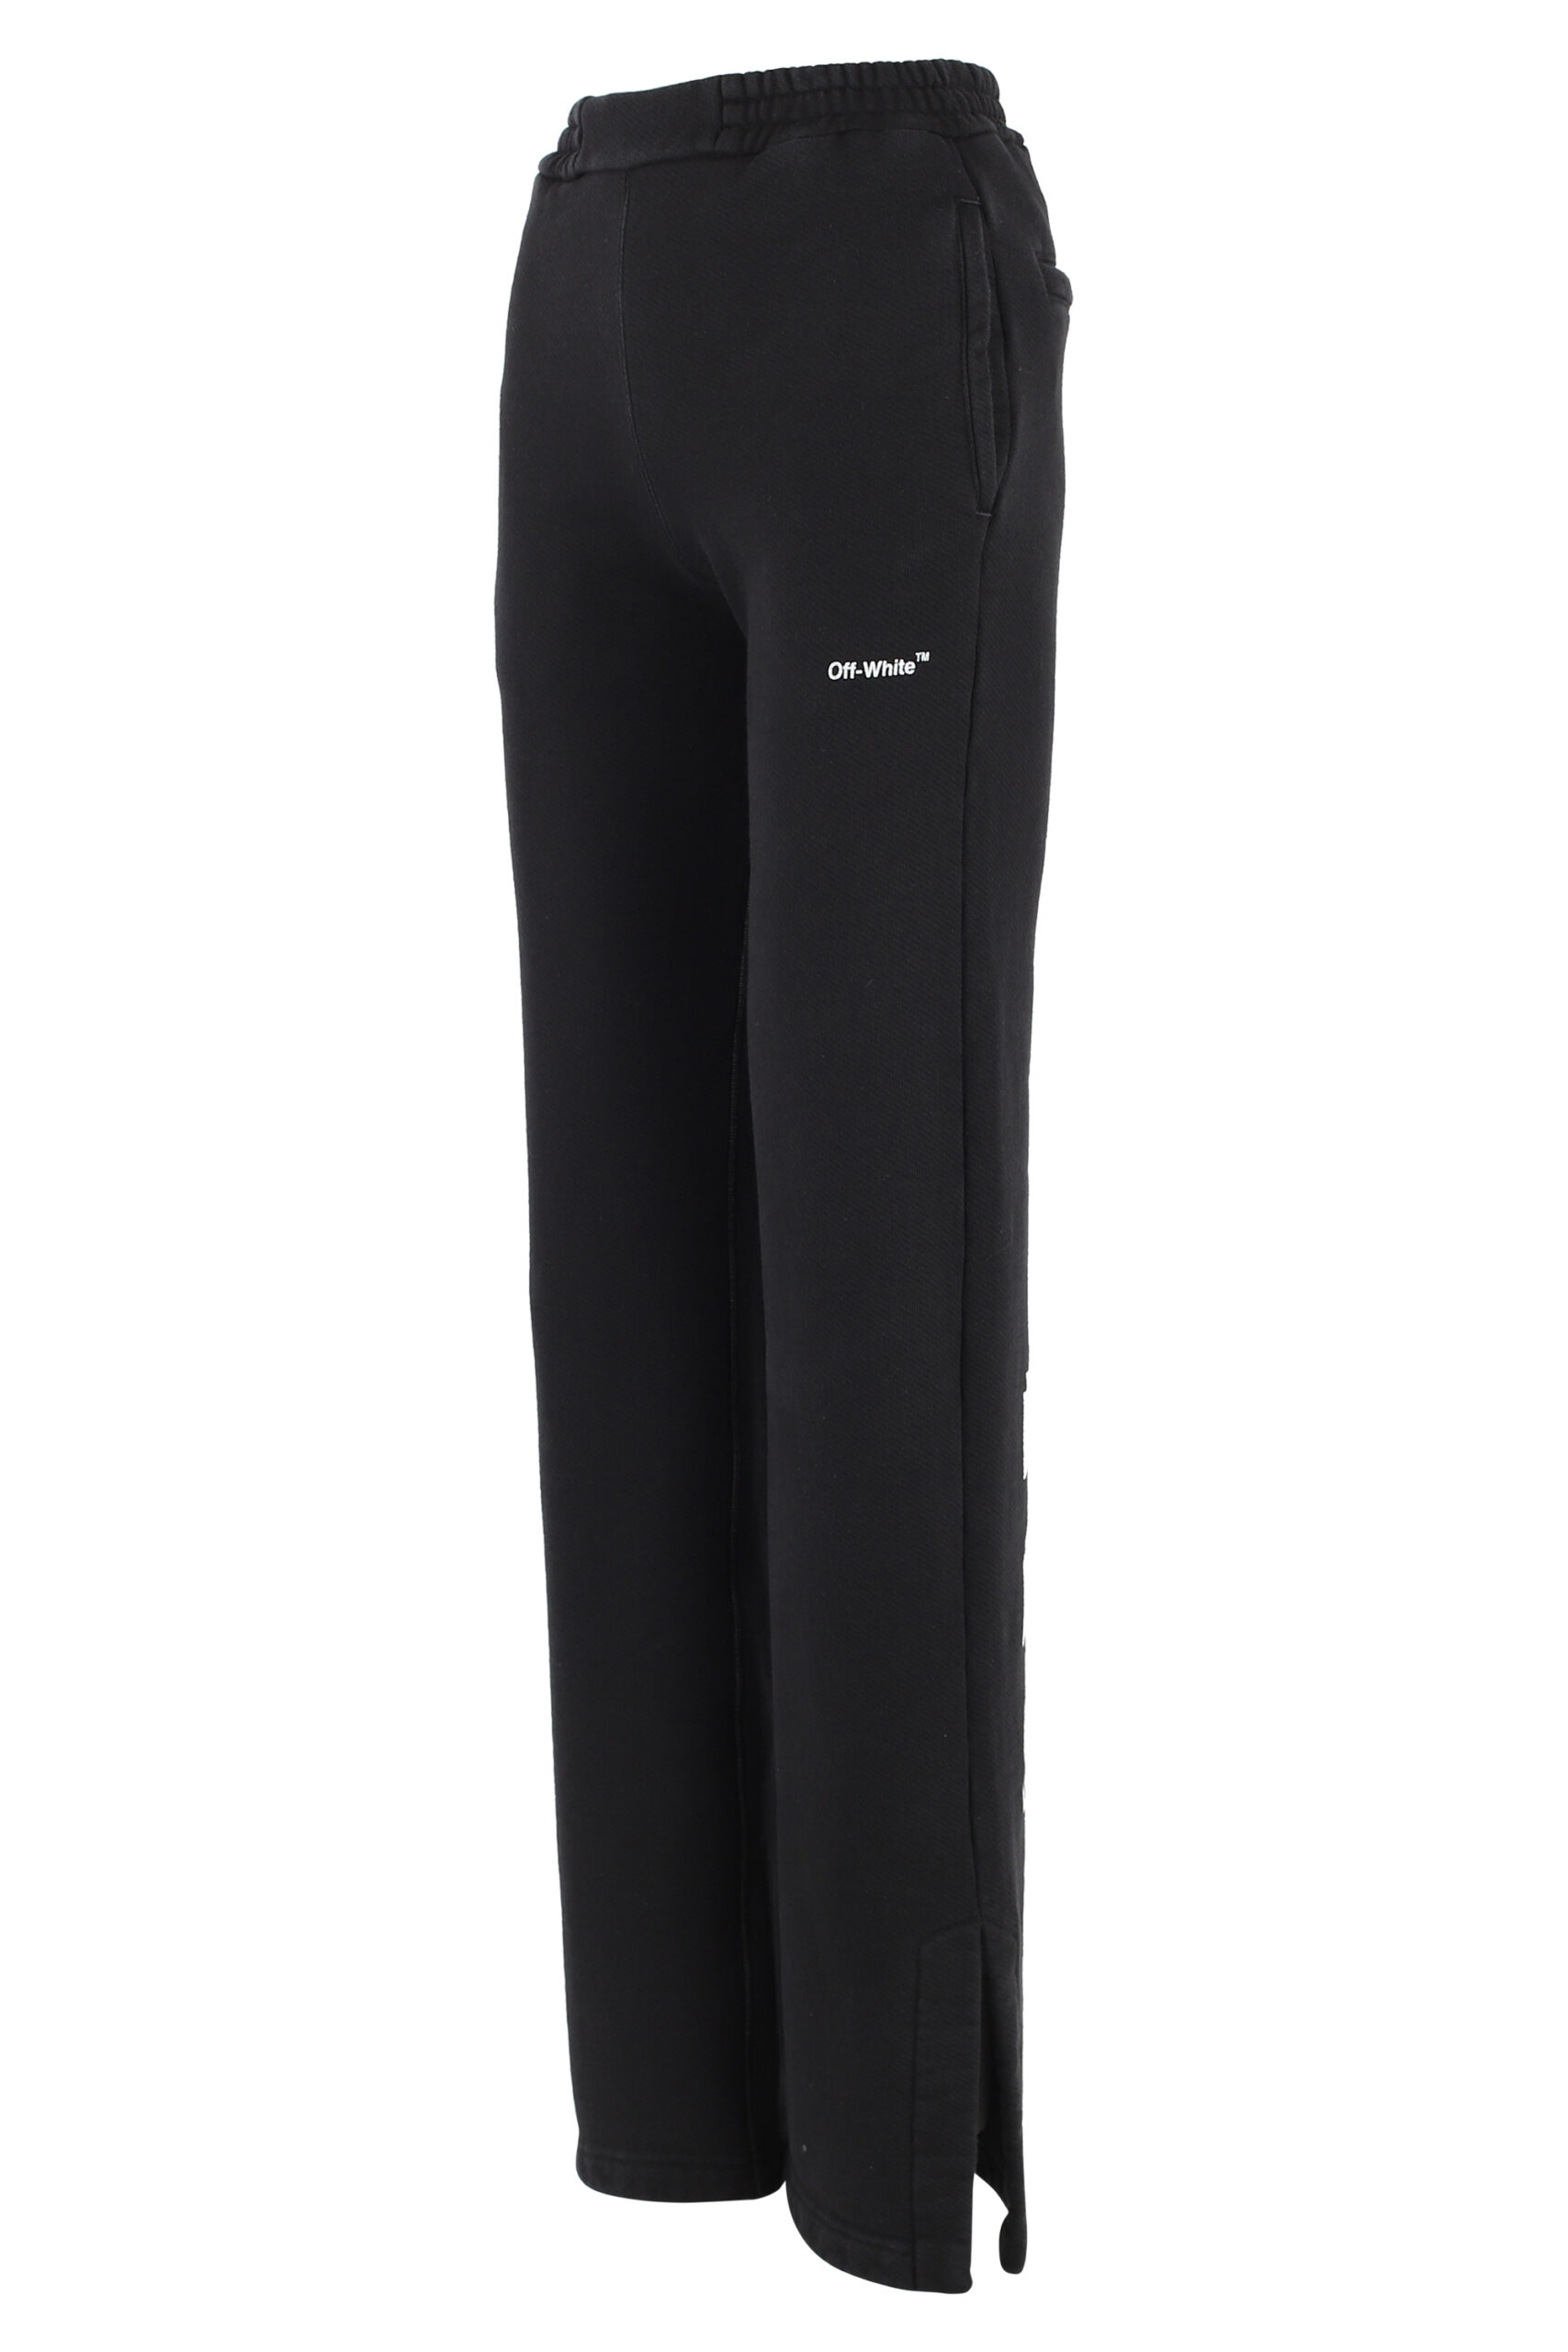 - Pantalon de chandal negro con logo blanco "Diag" - BLS Fashion